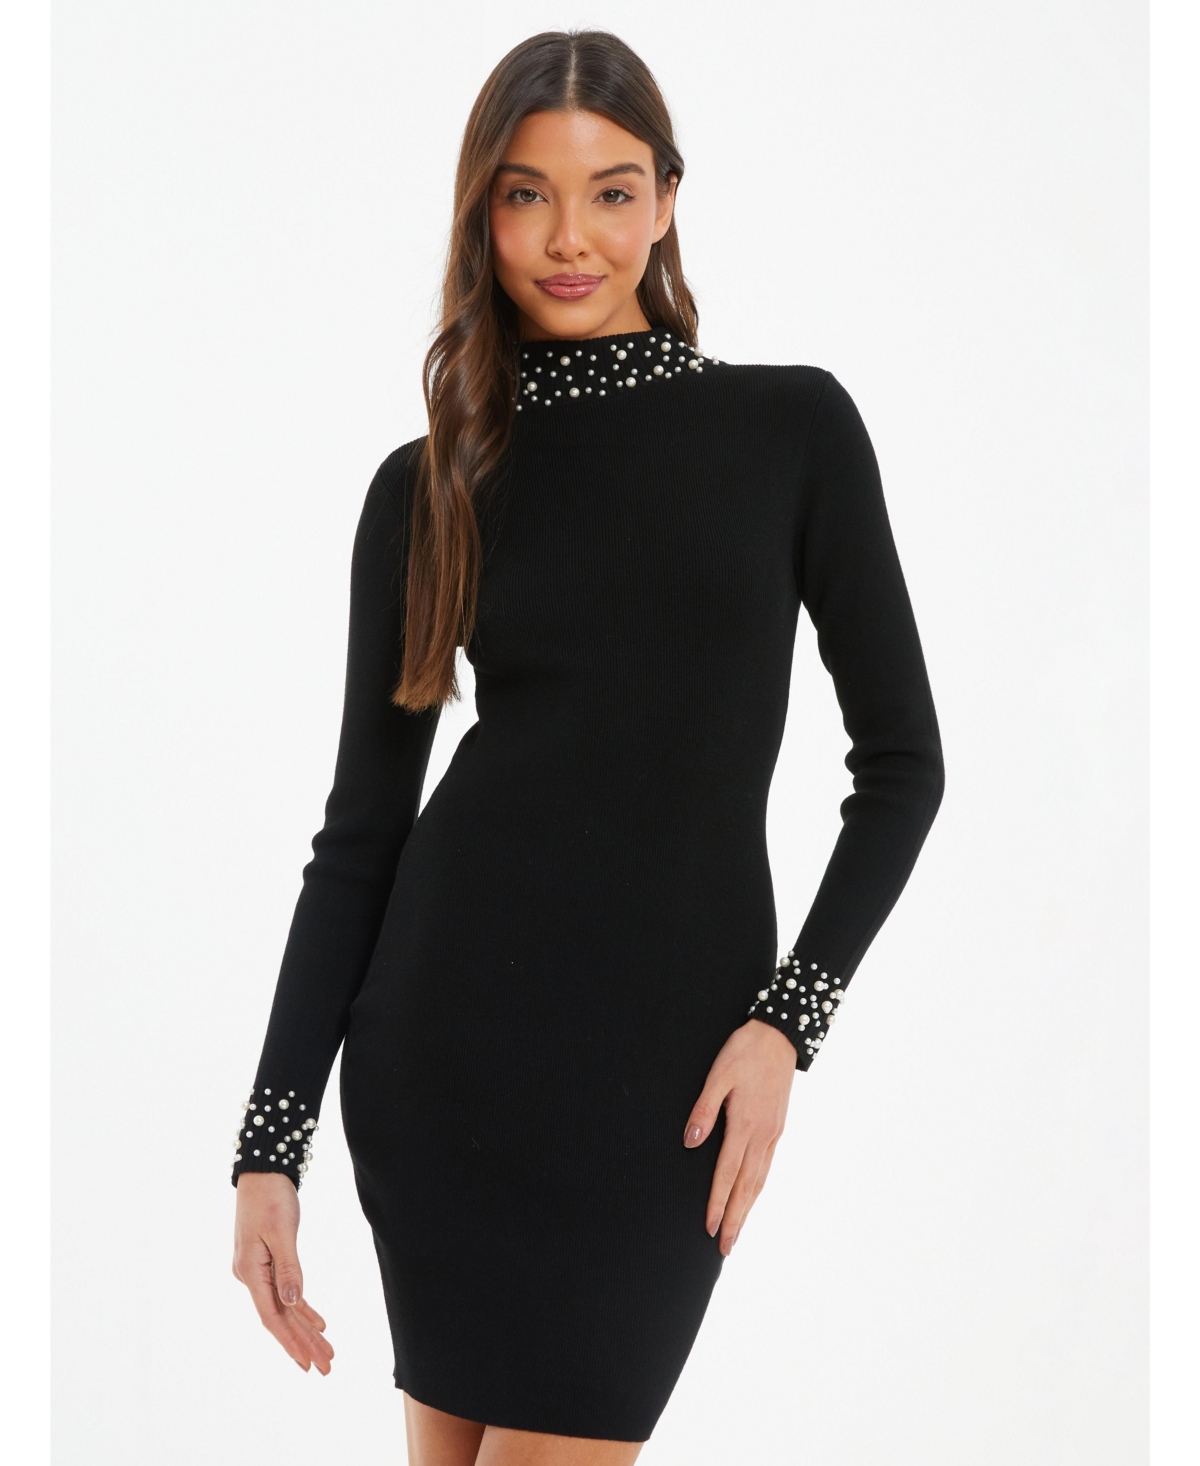 Women's Knit Pearl Detail Long Sleeve Sweater Dress - Black